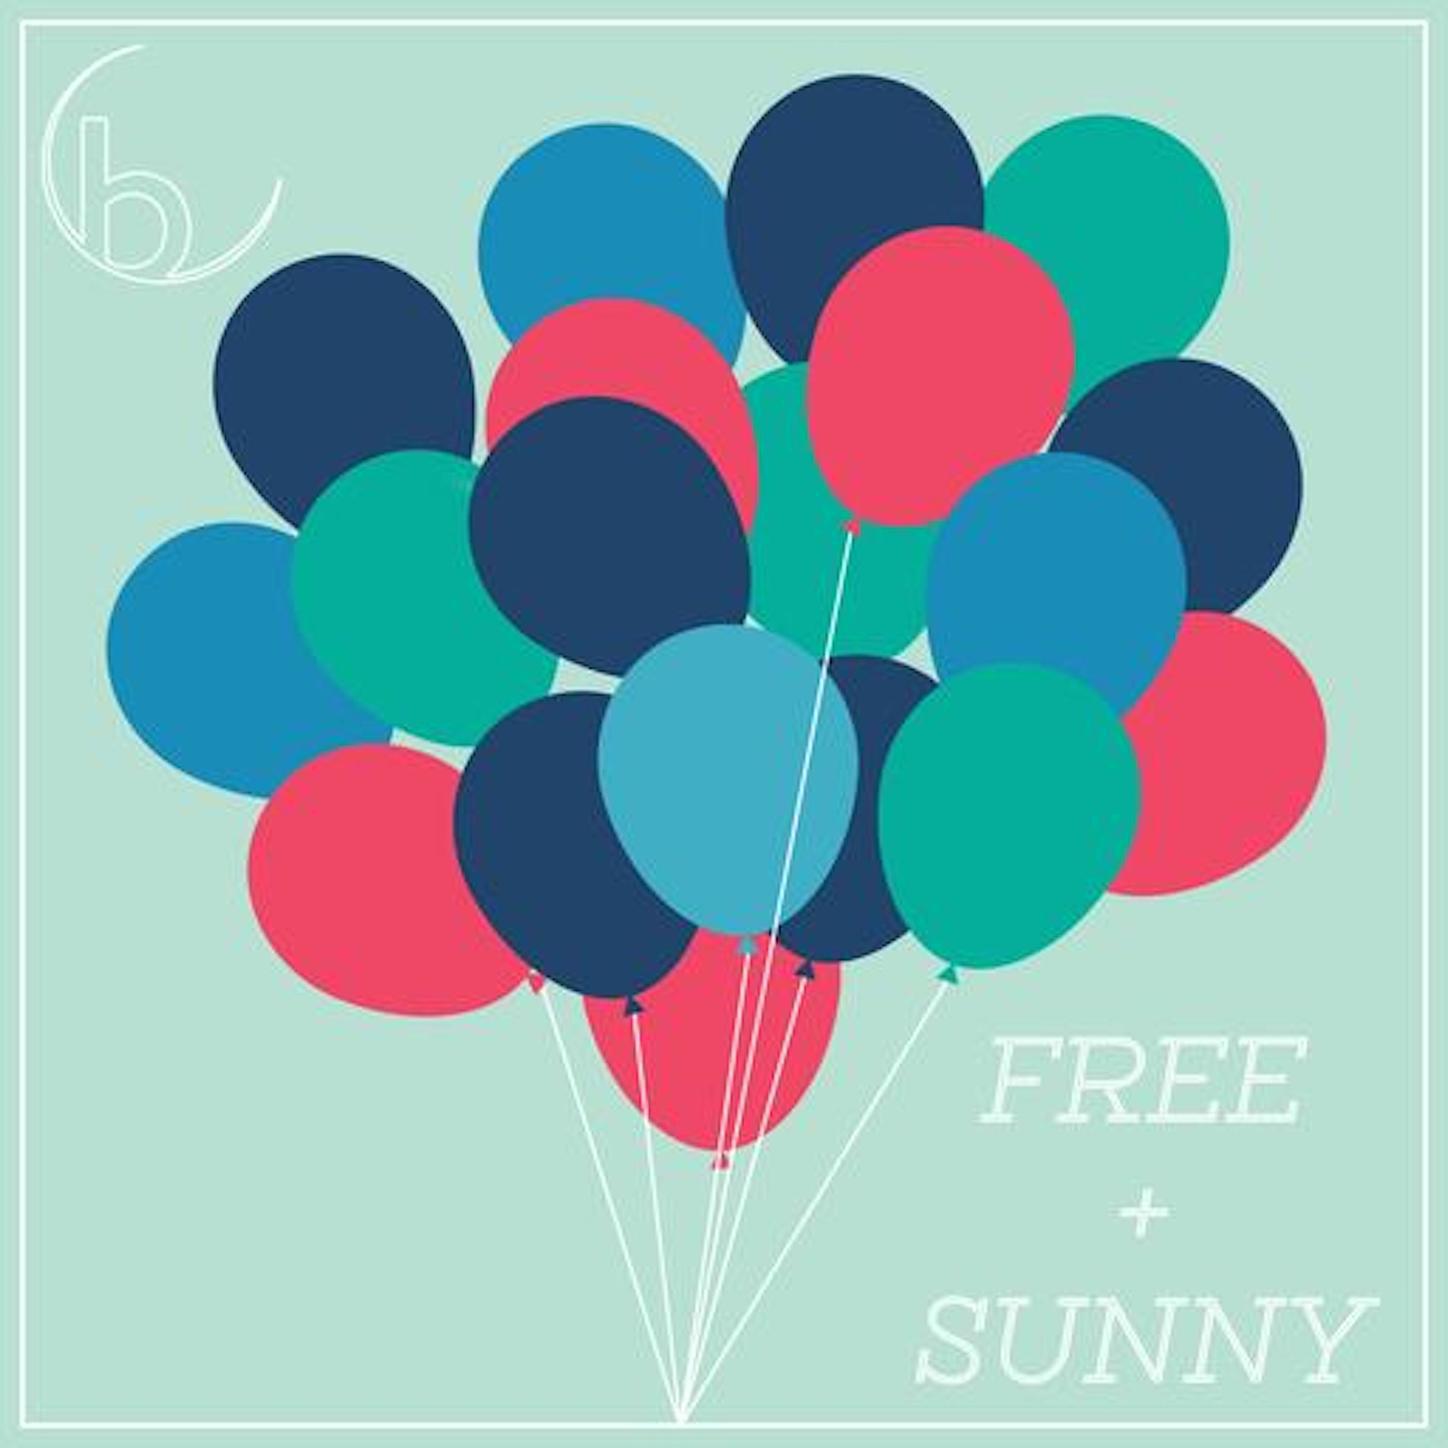 Free & Sunny